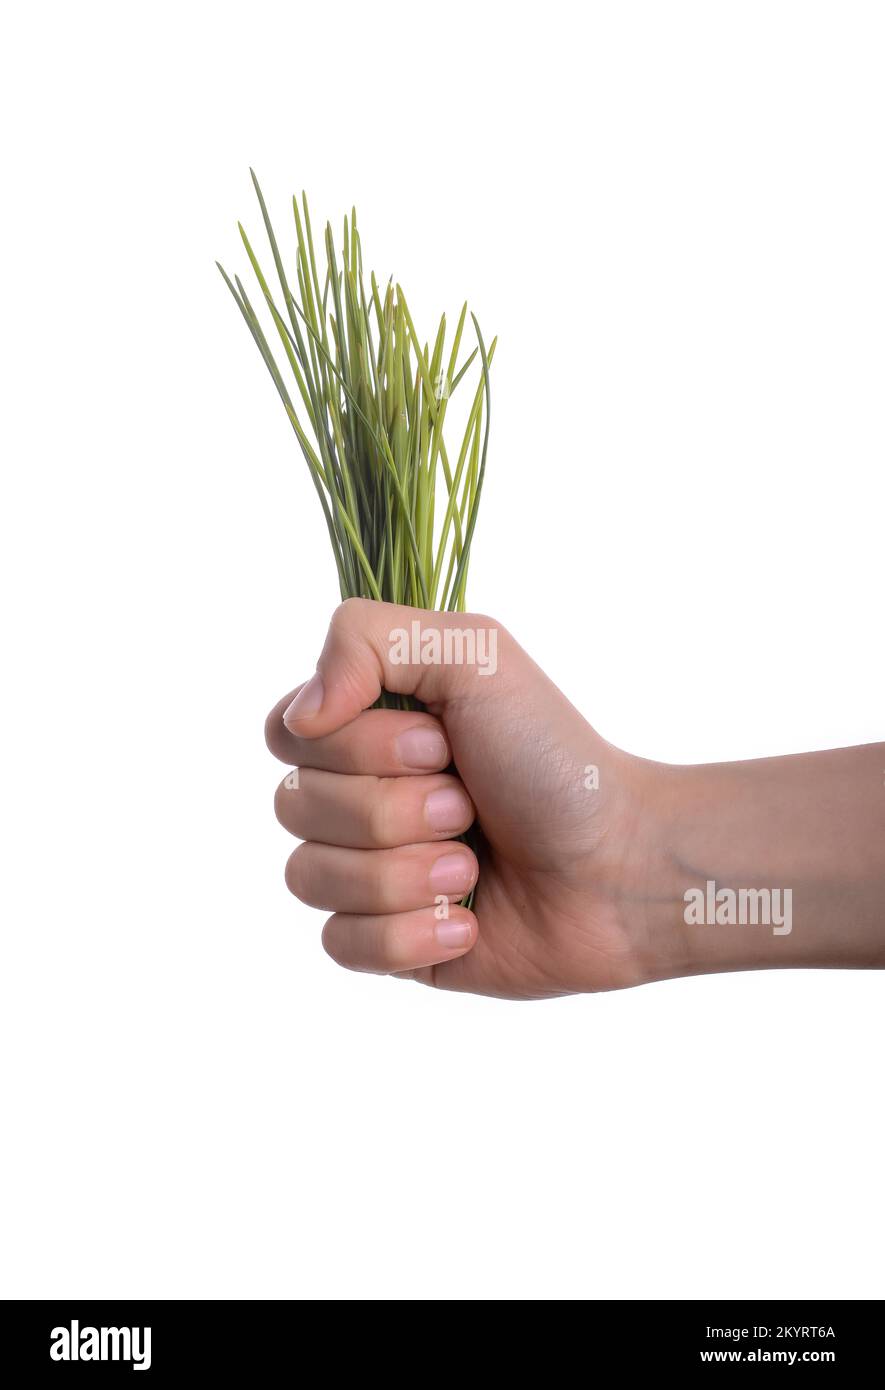 Kind hält ein Bündel Gras in der Hand auf einem weißen Hintergrund Stockfoto